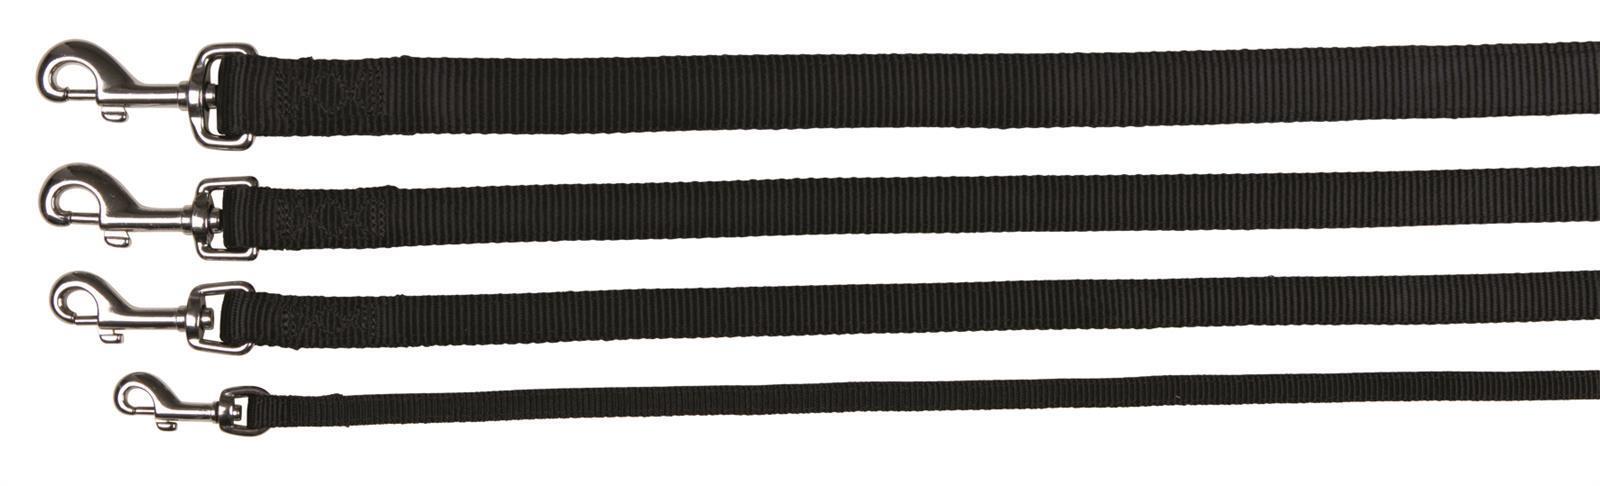 Trixie Premium Leine, Größe XS-S, 1,20 m, 15 mm, schwarz